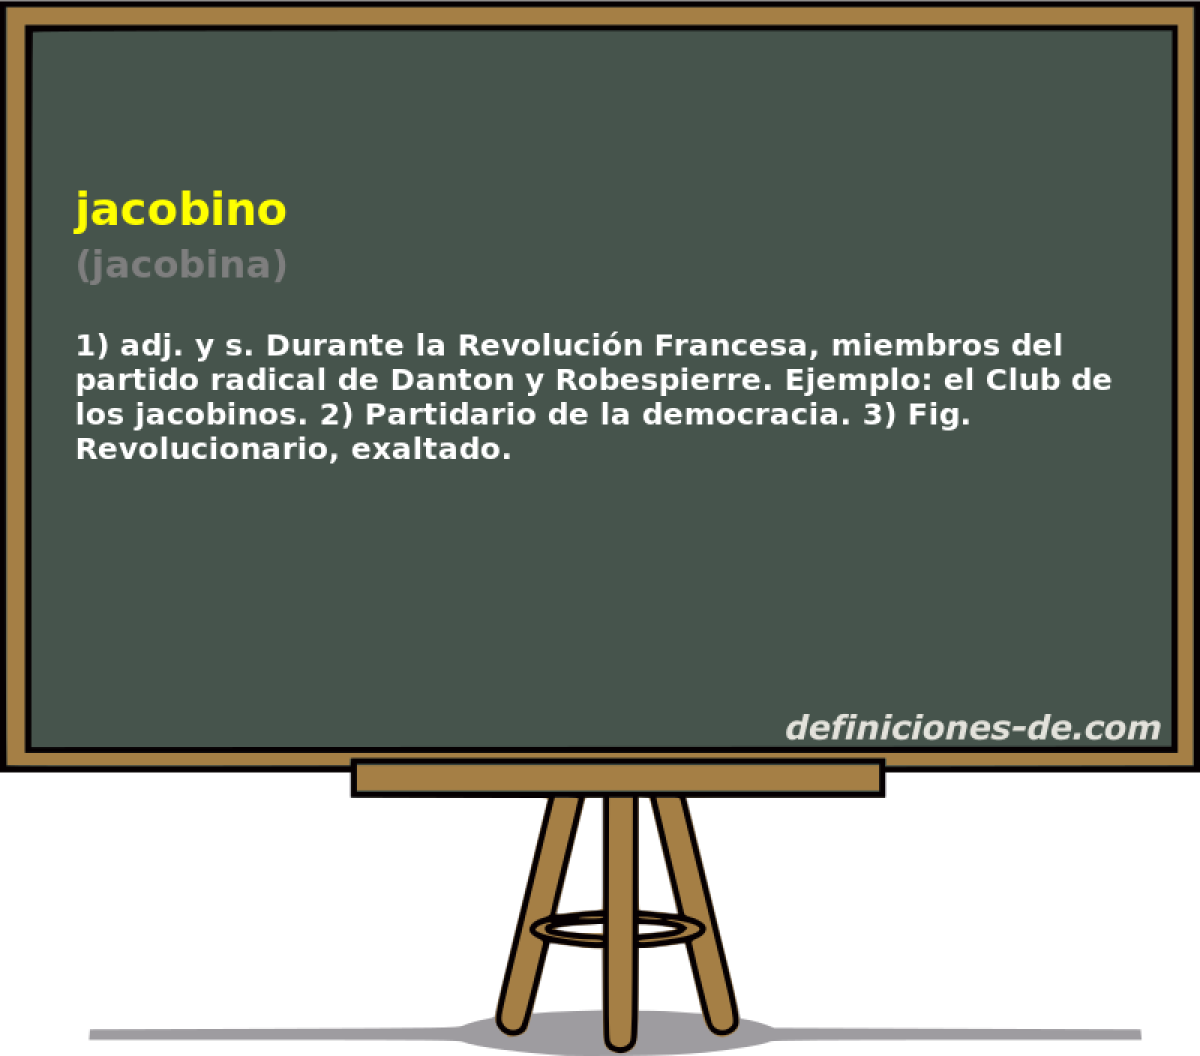 jacobino (jacobina)